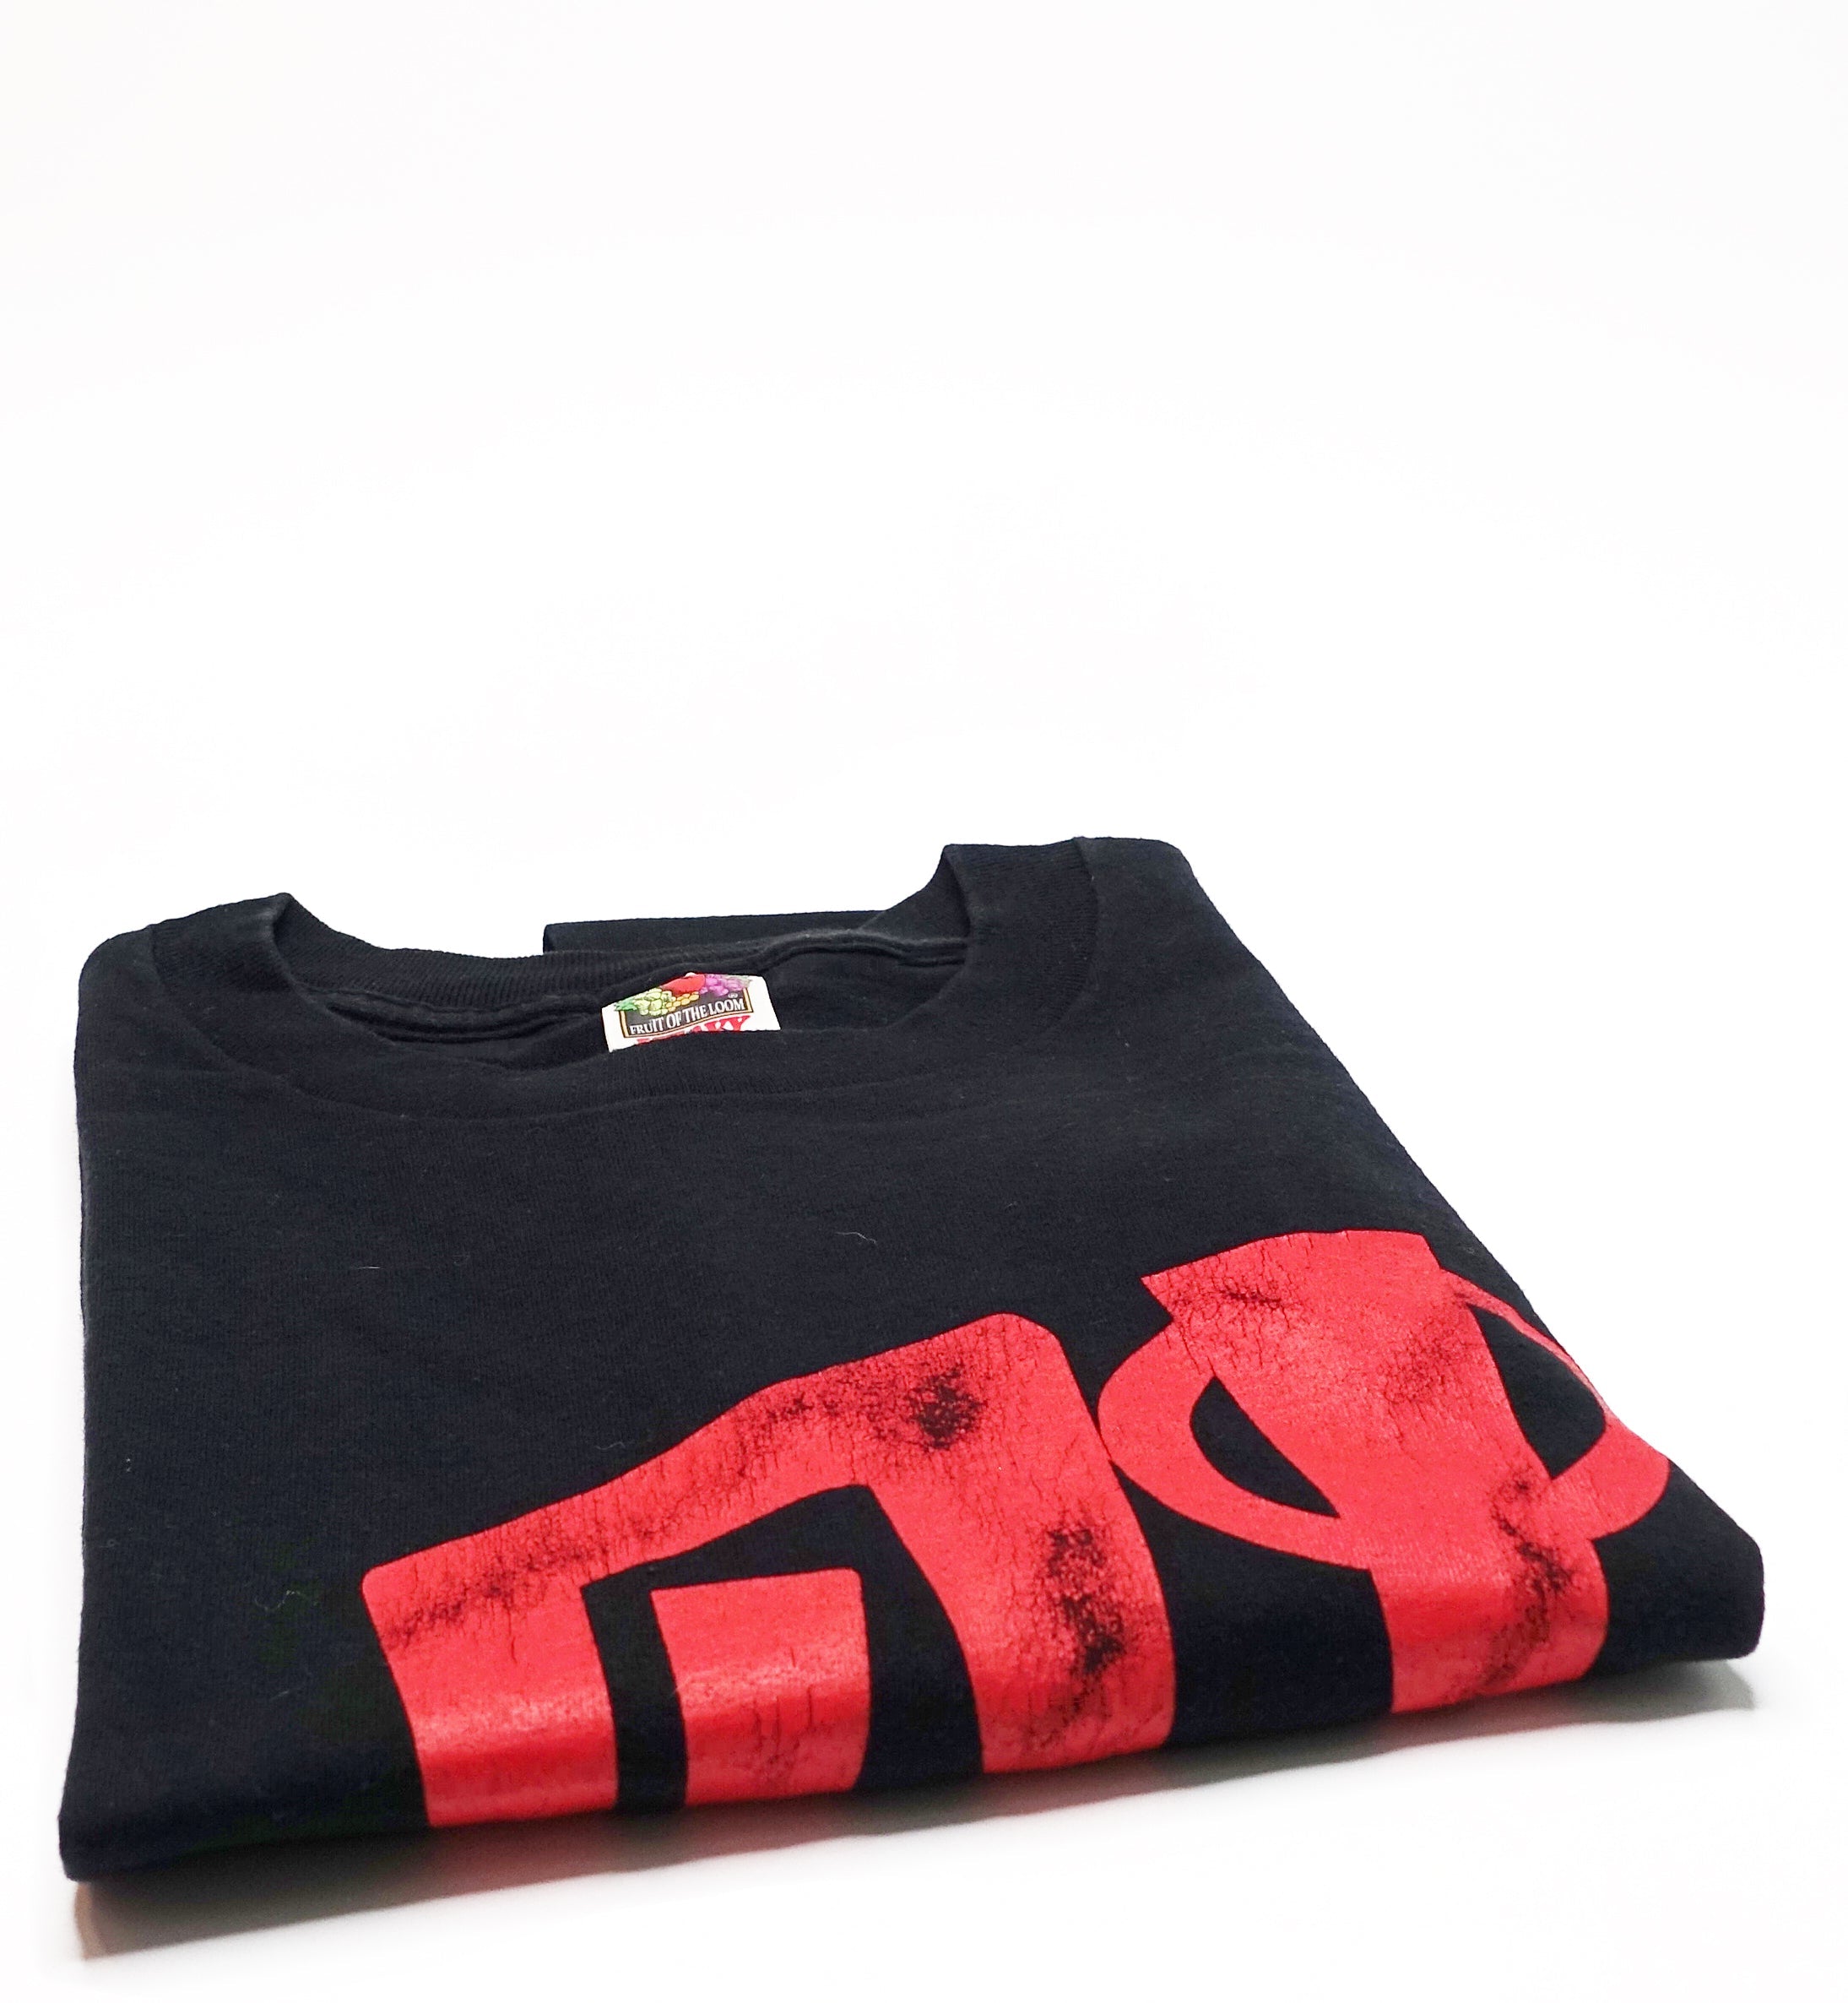 D.I. - Red D.I. Logo 90's Shirt Size Large